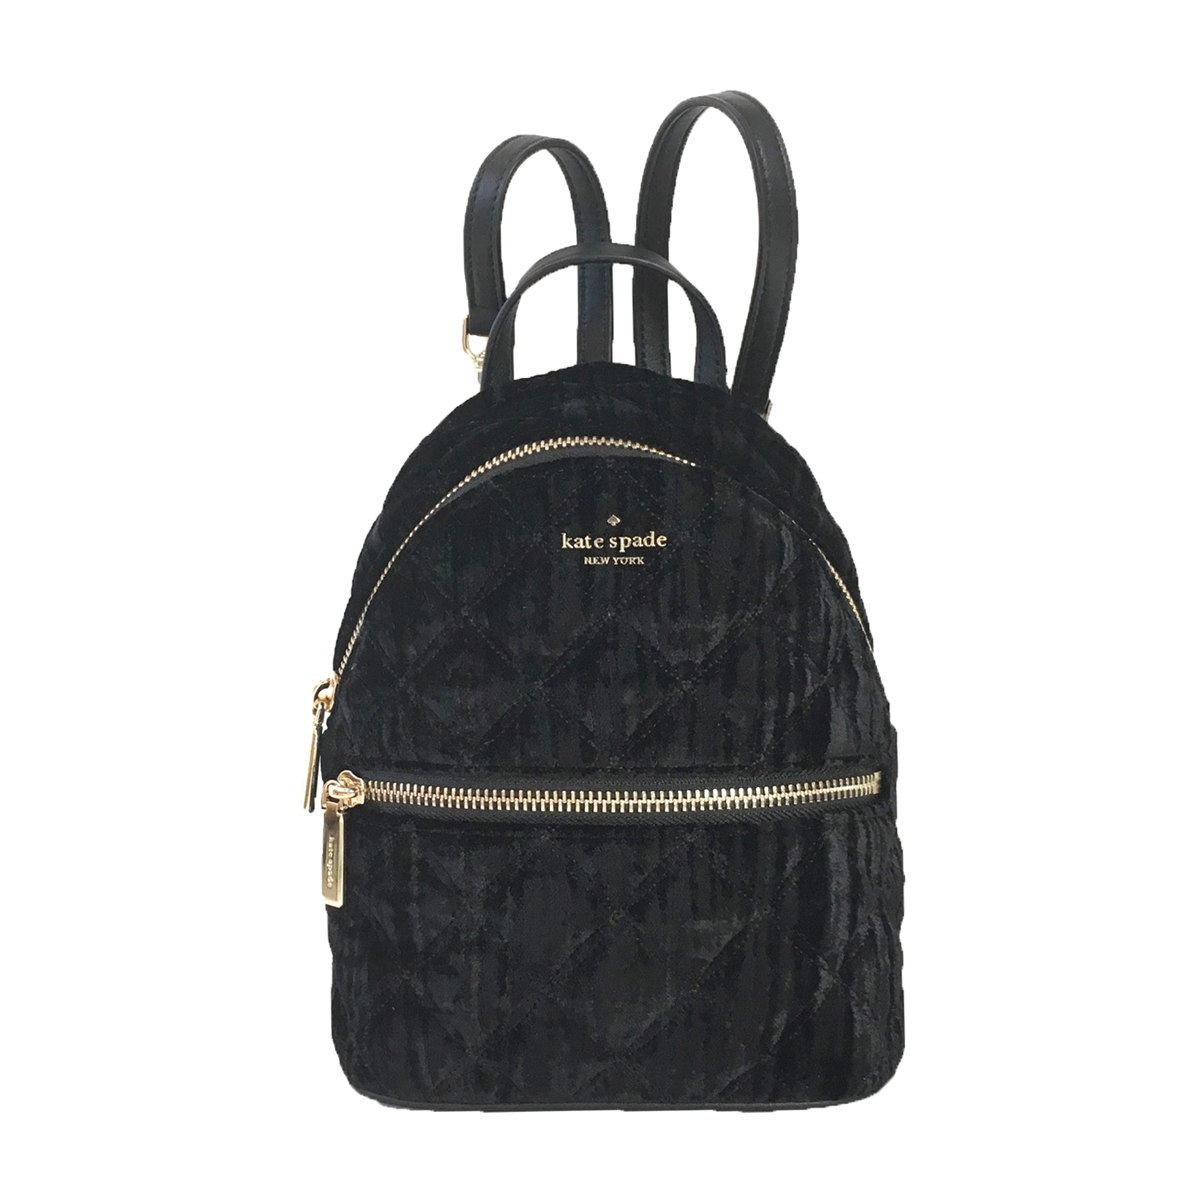 kate spade cameron street BLACK Velvet HANDBAG Embellished SAM Bag Purse  BAG | eBay